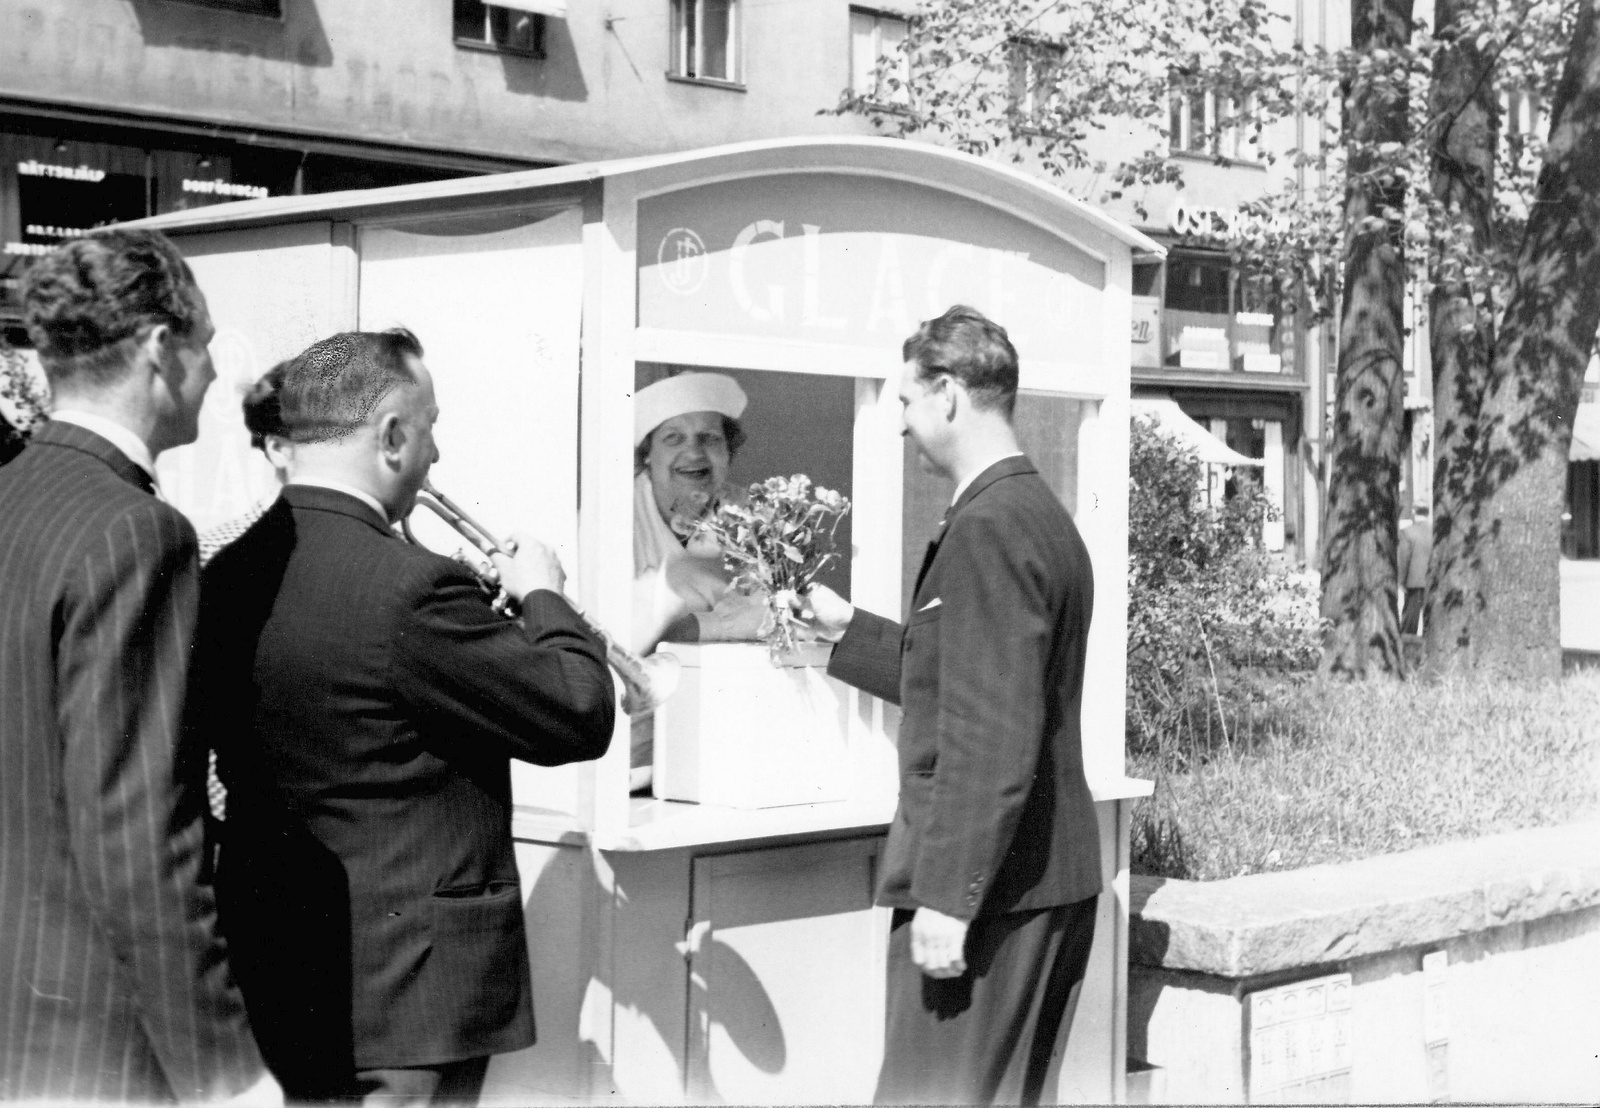 Så här såg det ut 1943 när musikern Martin Norstedt uppvaktade sin mamma i glasståndet på Hornsgatan, Stockholm på Mors dag. 
Foto: SCANPIX